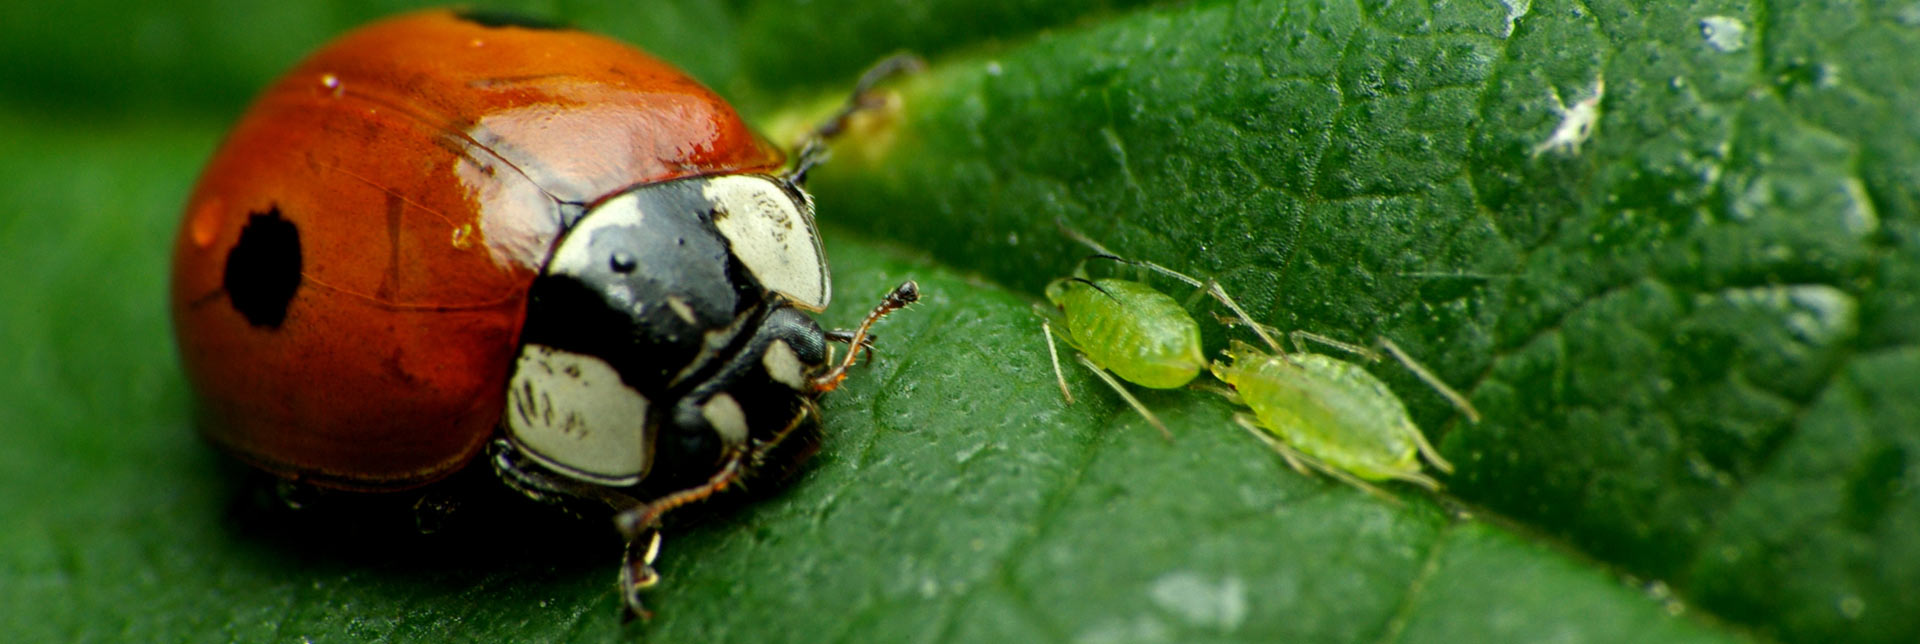 Combate de insectos en cultivos: el escarabajo vs. el pulgón